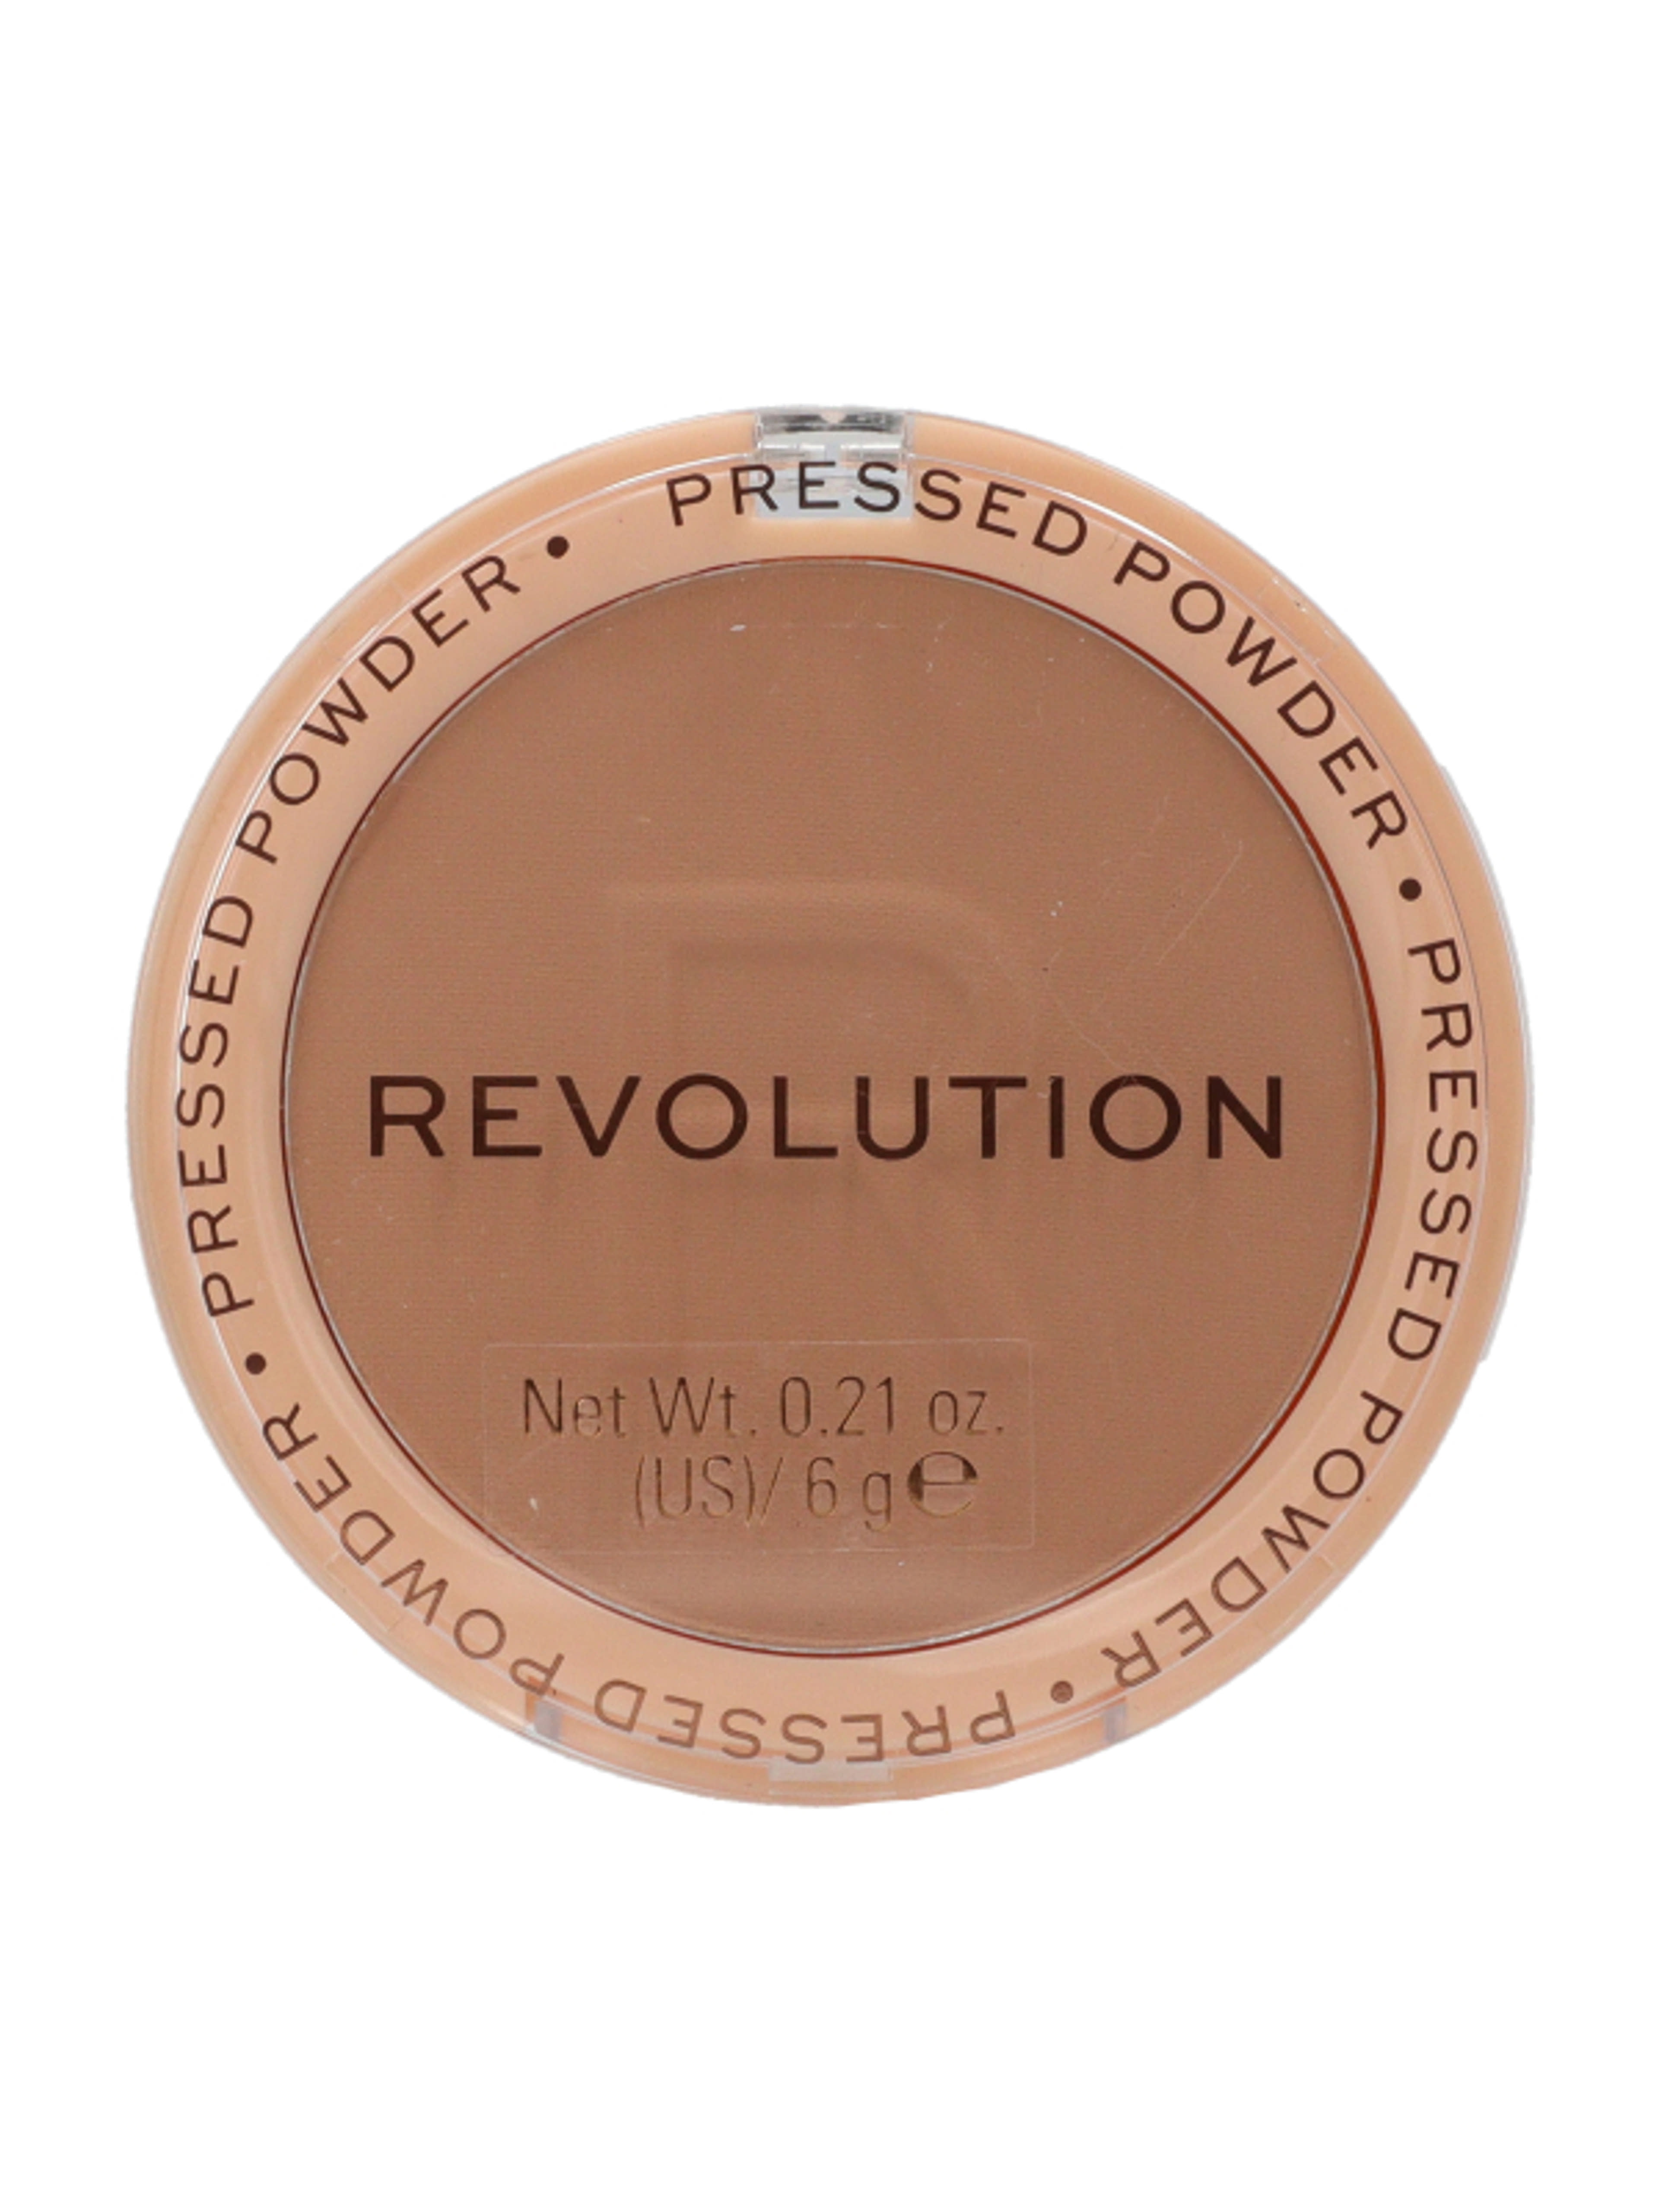 Revolution Reloaded Pressed púder, beige - 1 db-1